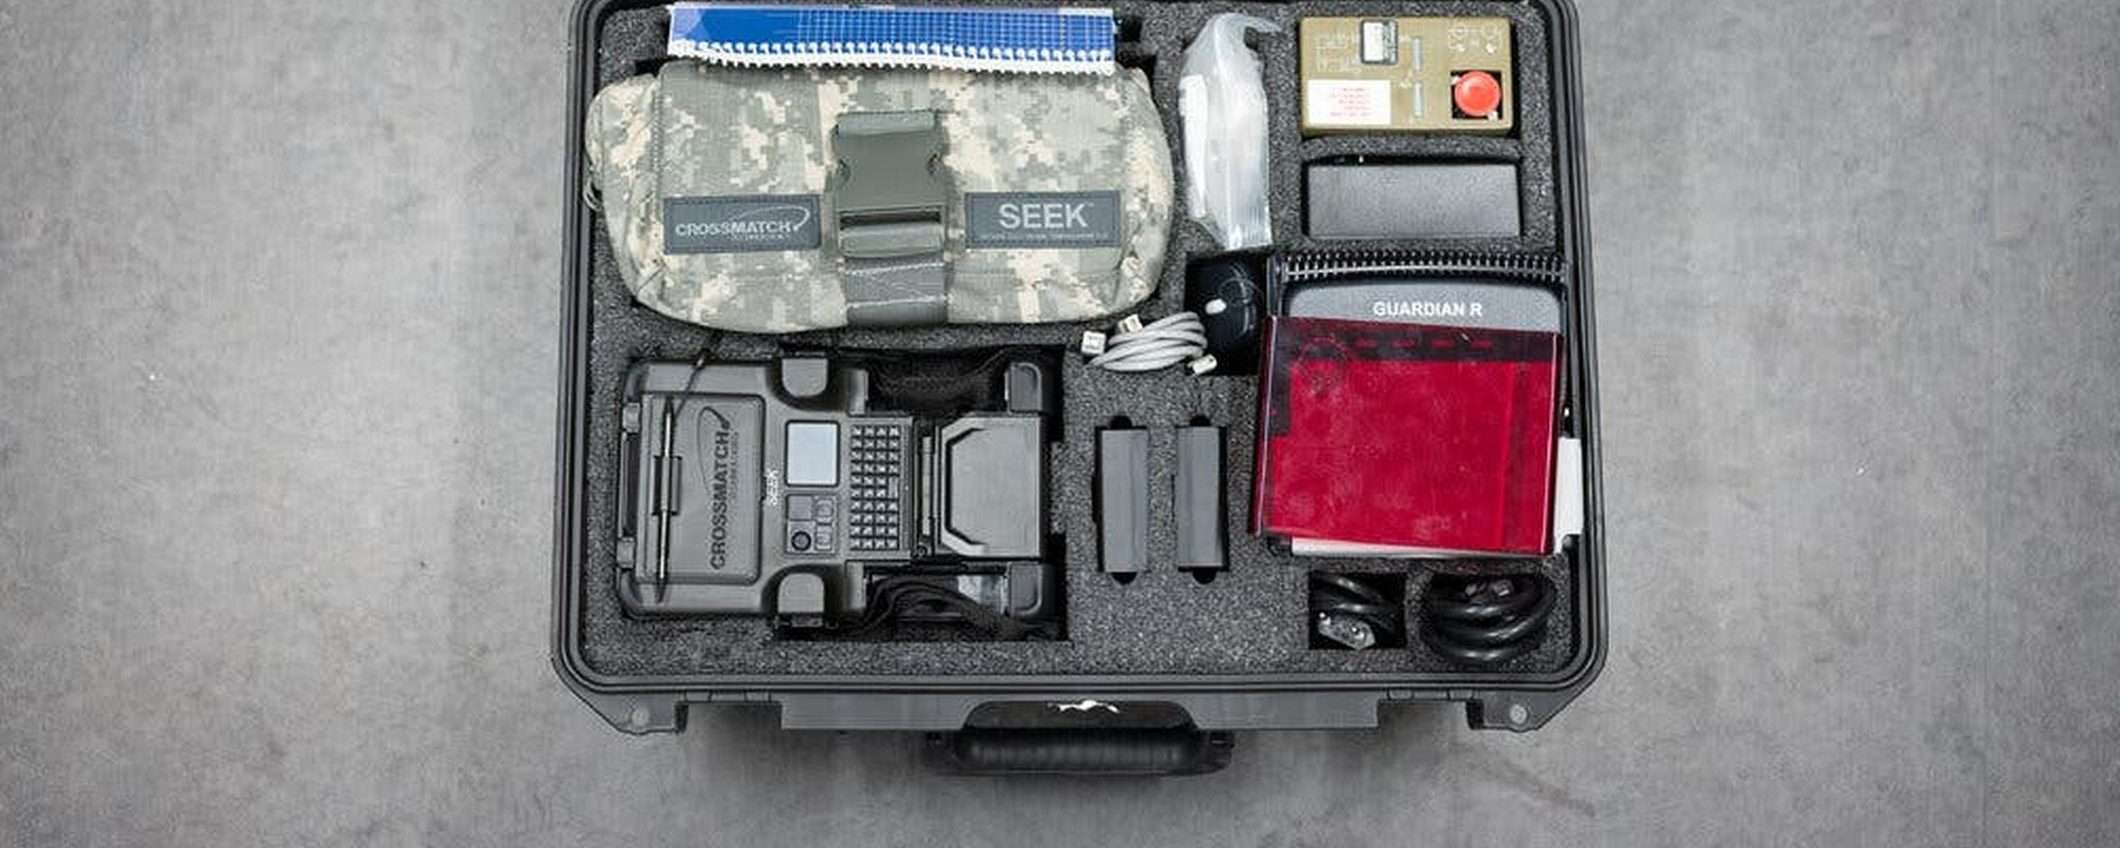 Dispositivi militari con dati biometrici venduti su eBay